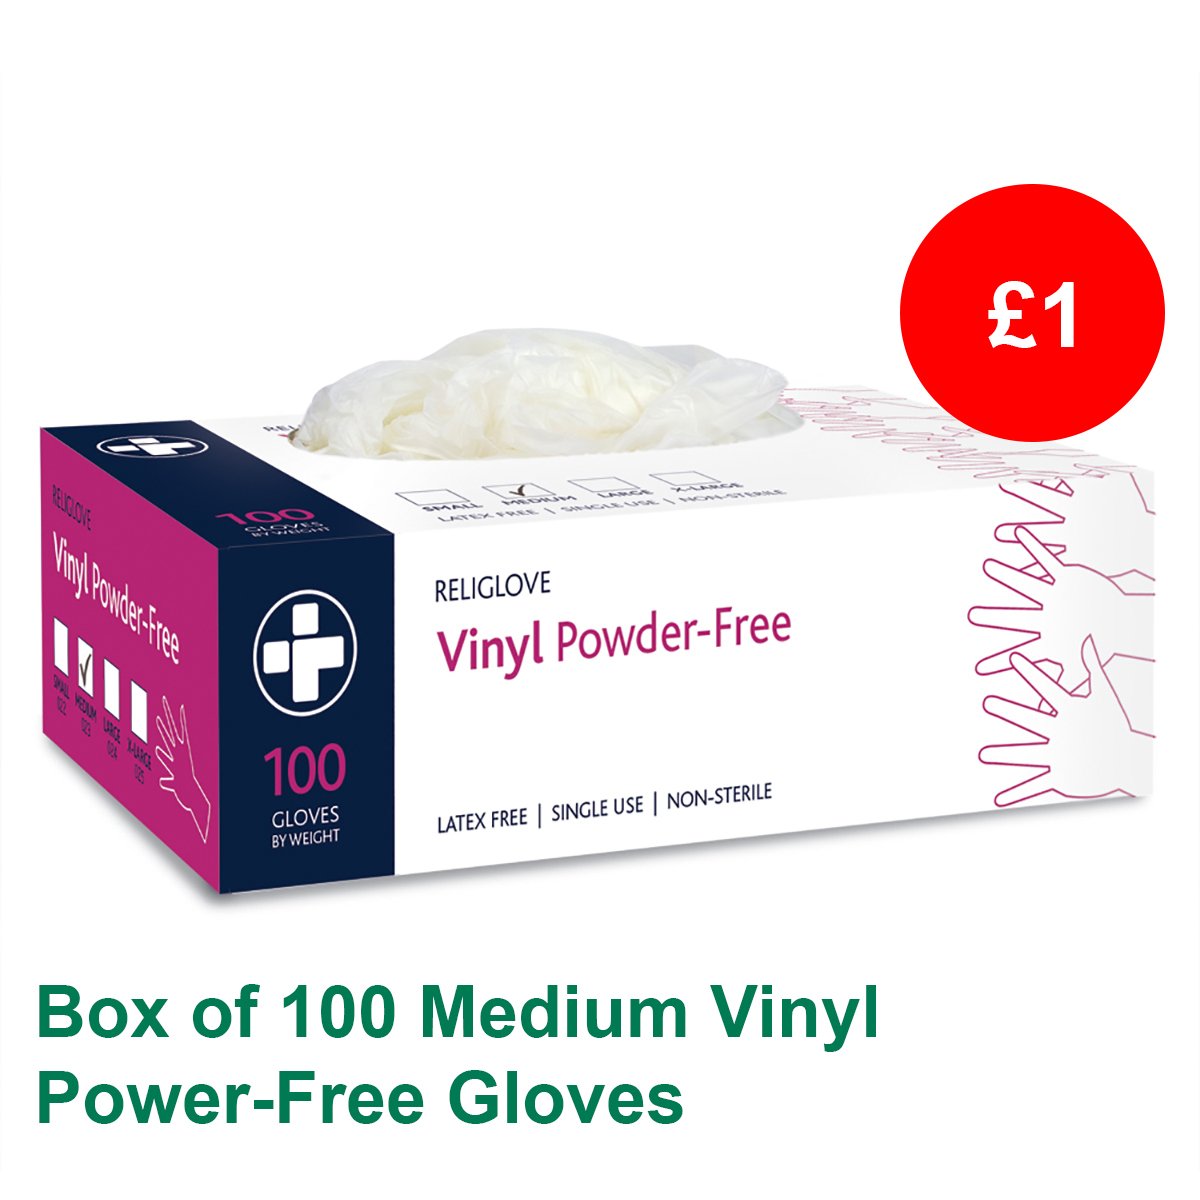 Box of 100 Medium Vinyl Powder-Free Gloves